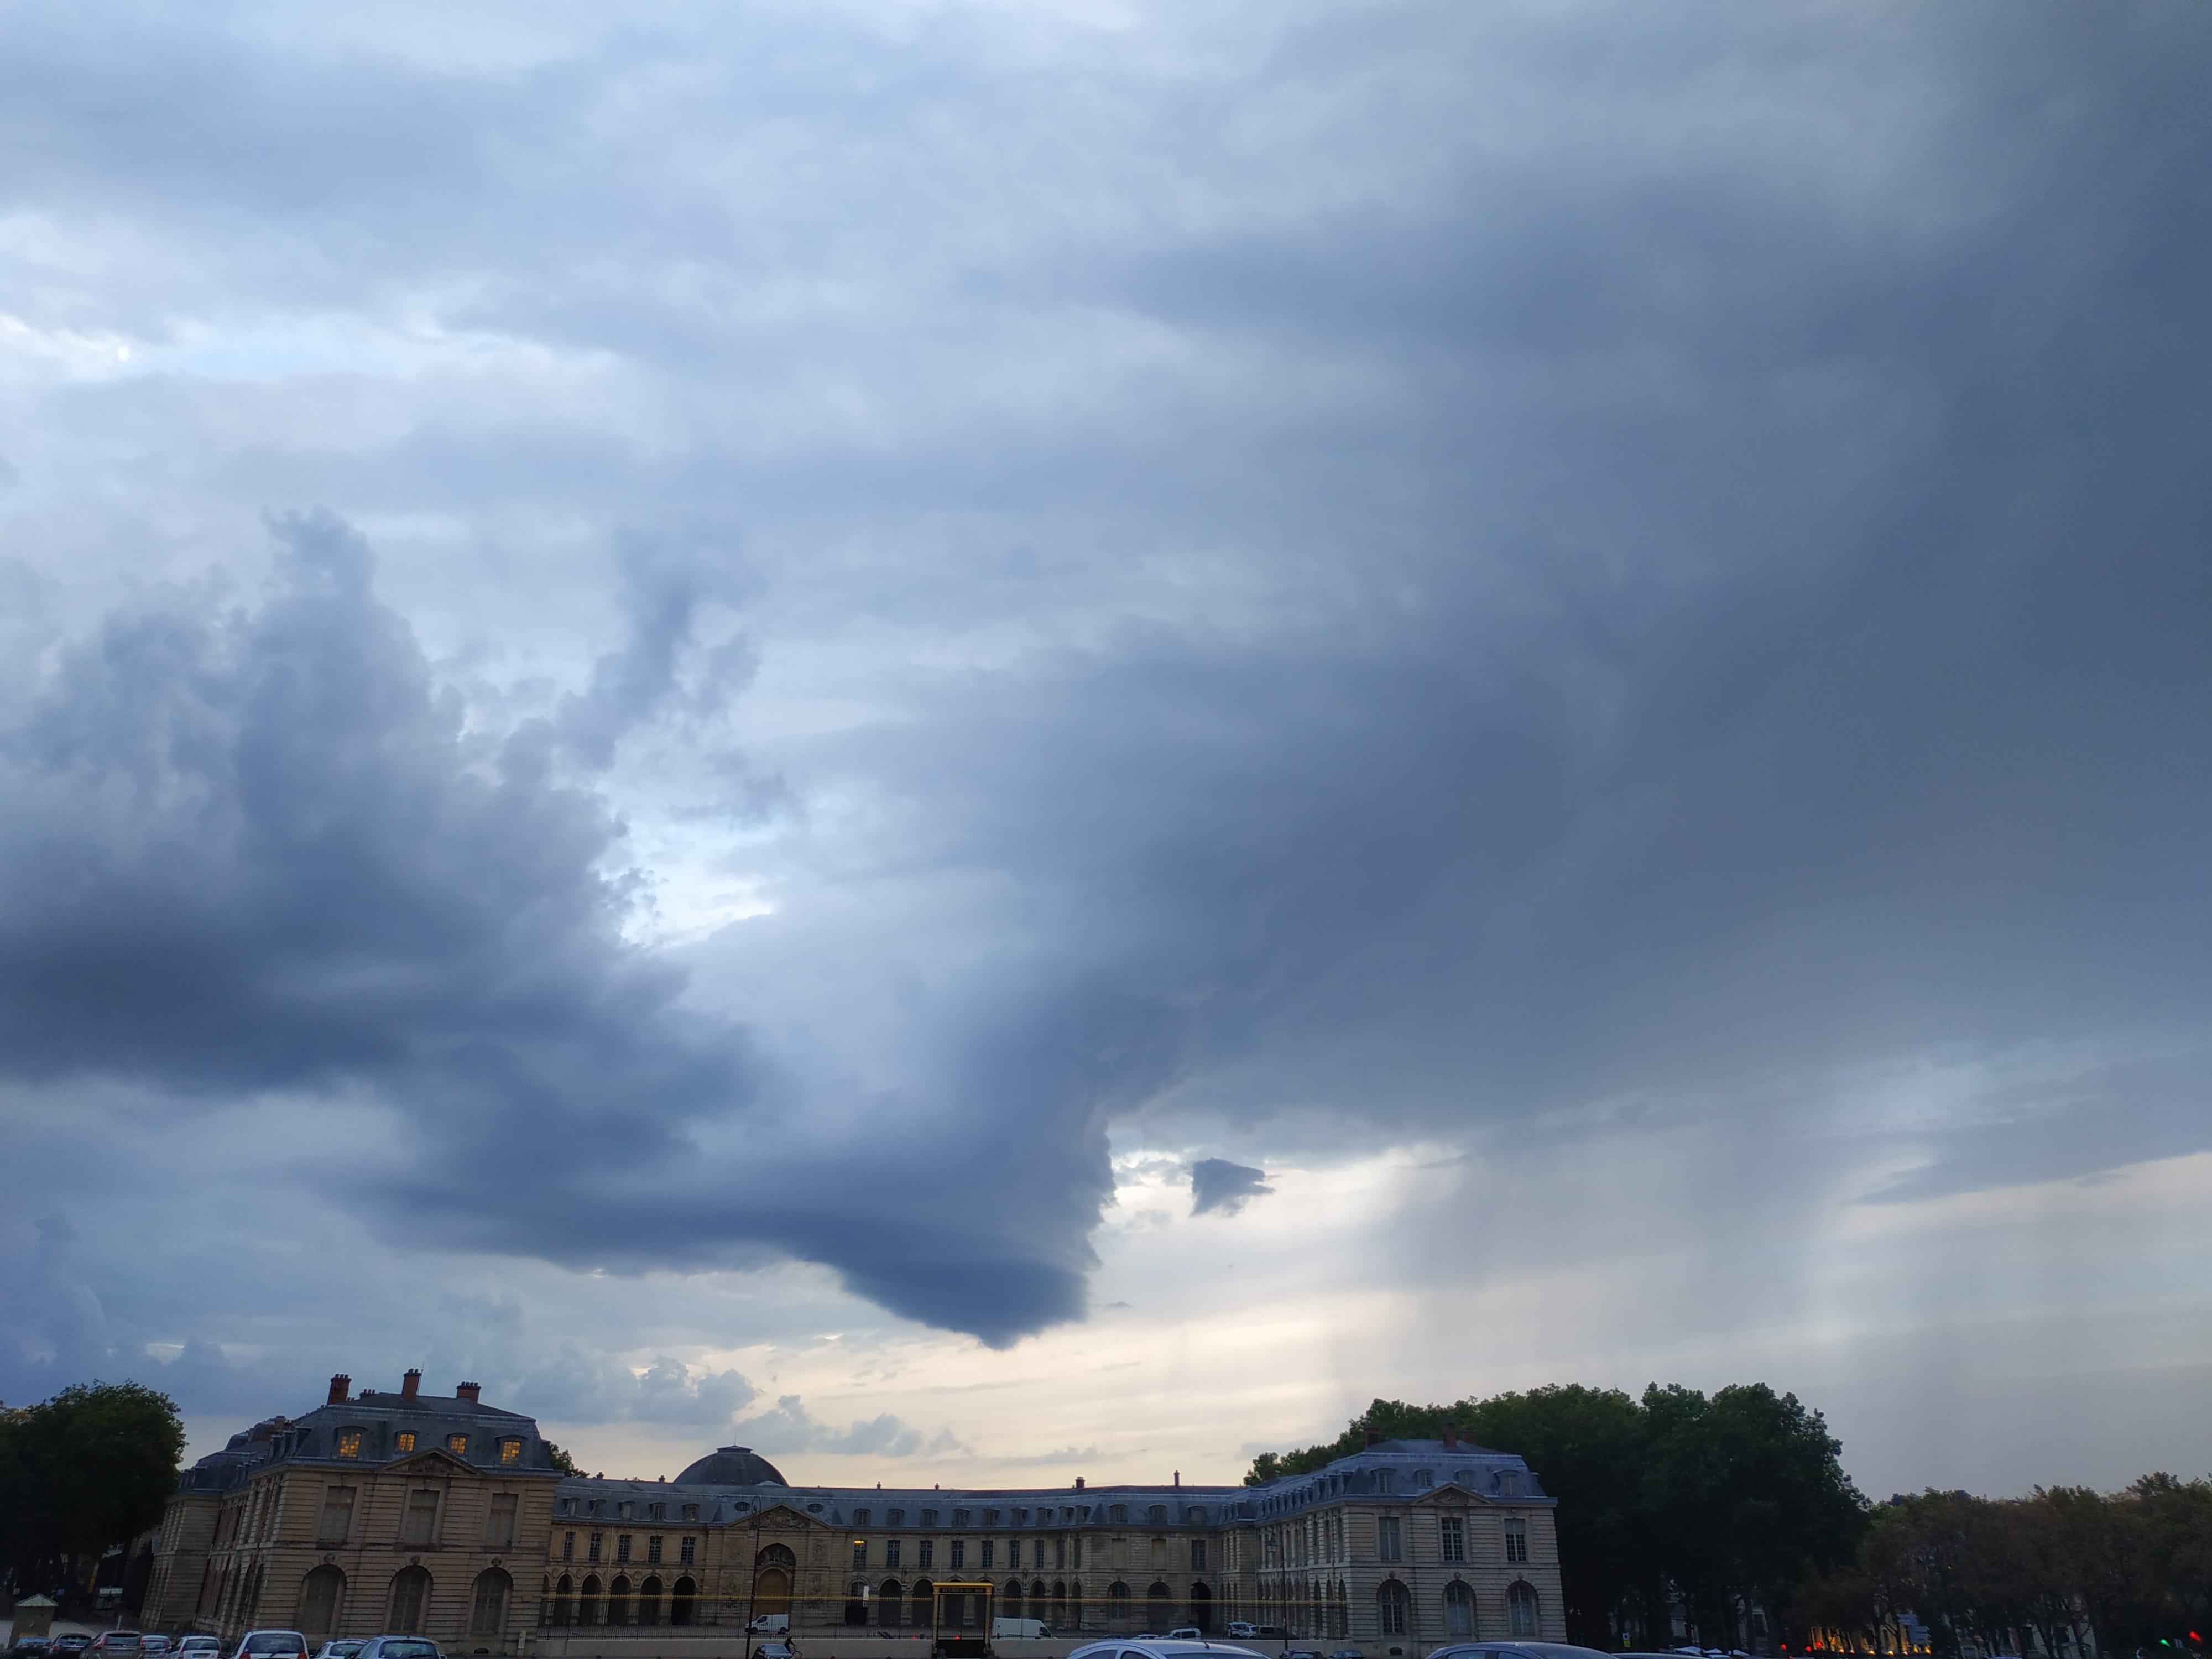 Supercellule en fin de vie vue depuis Versailles - 12/08/2020 20:40 - Kassian Bouaziz